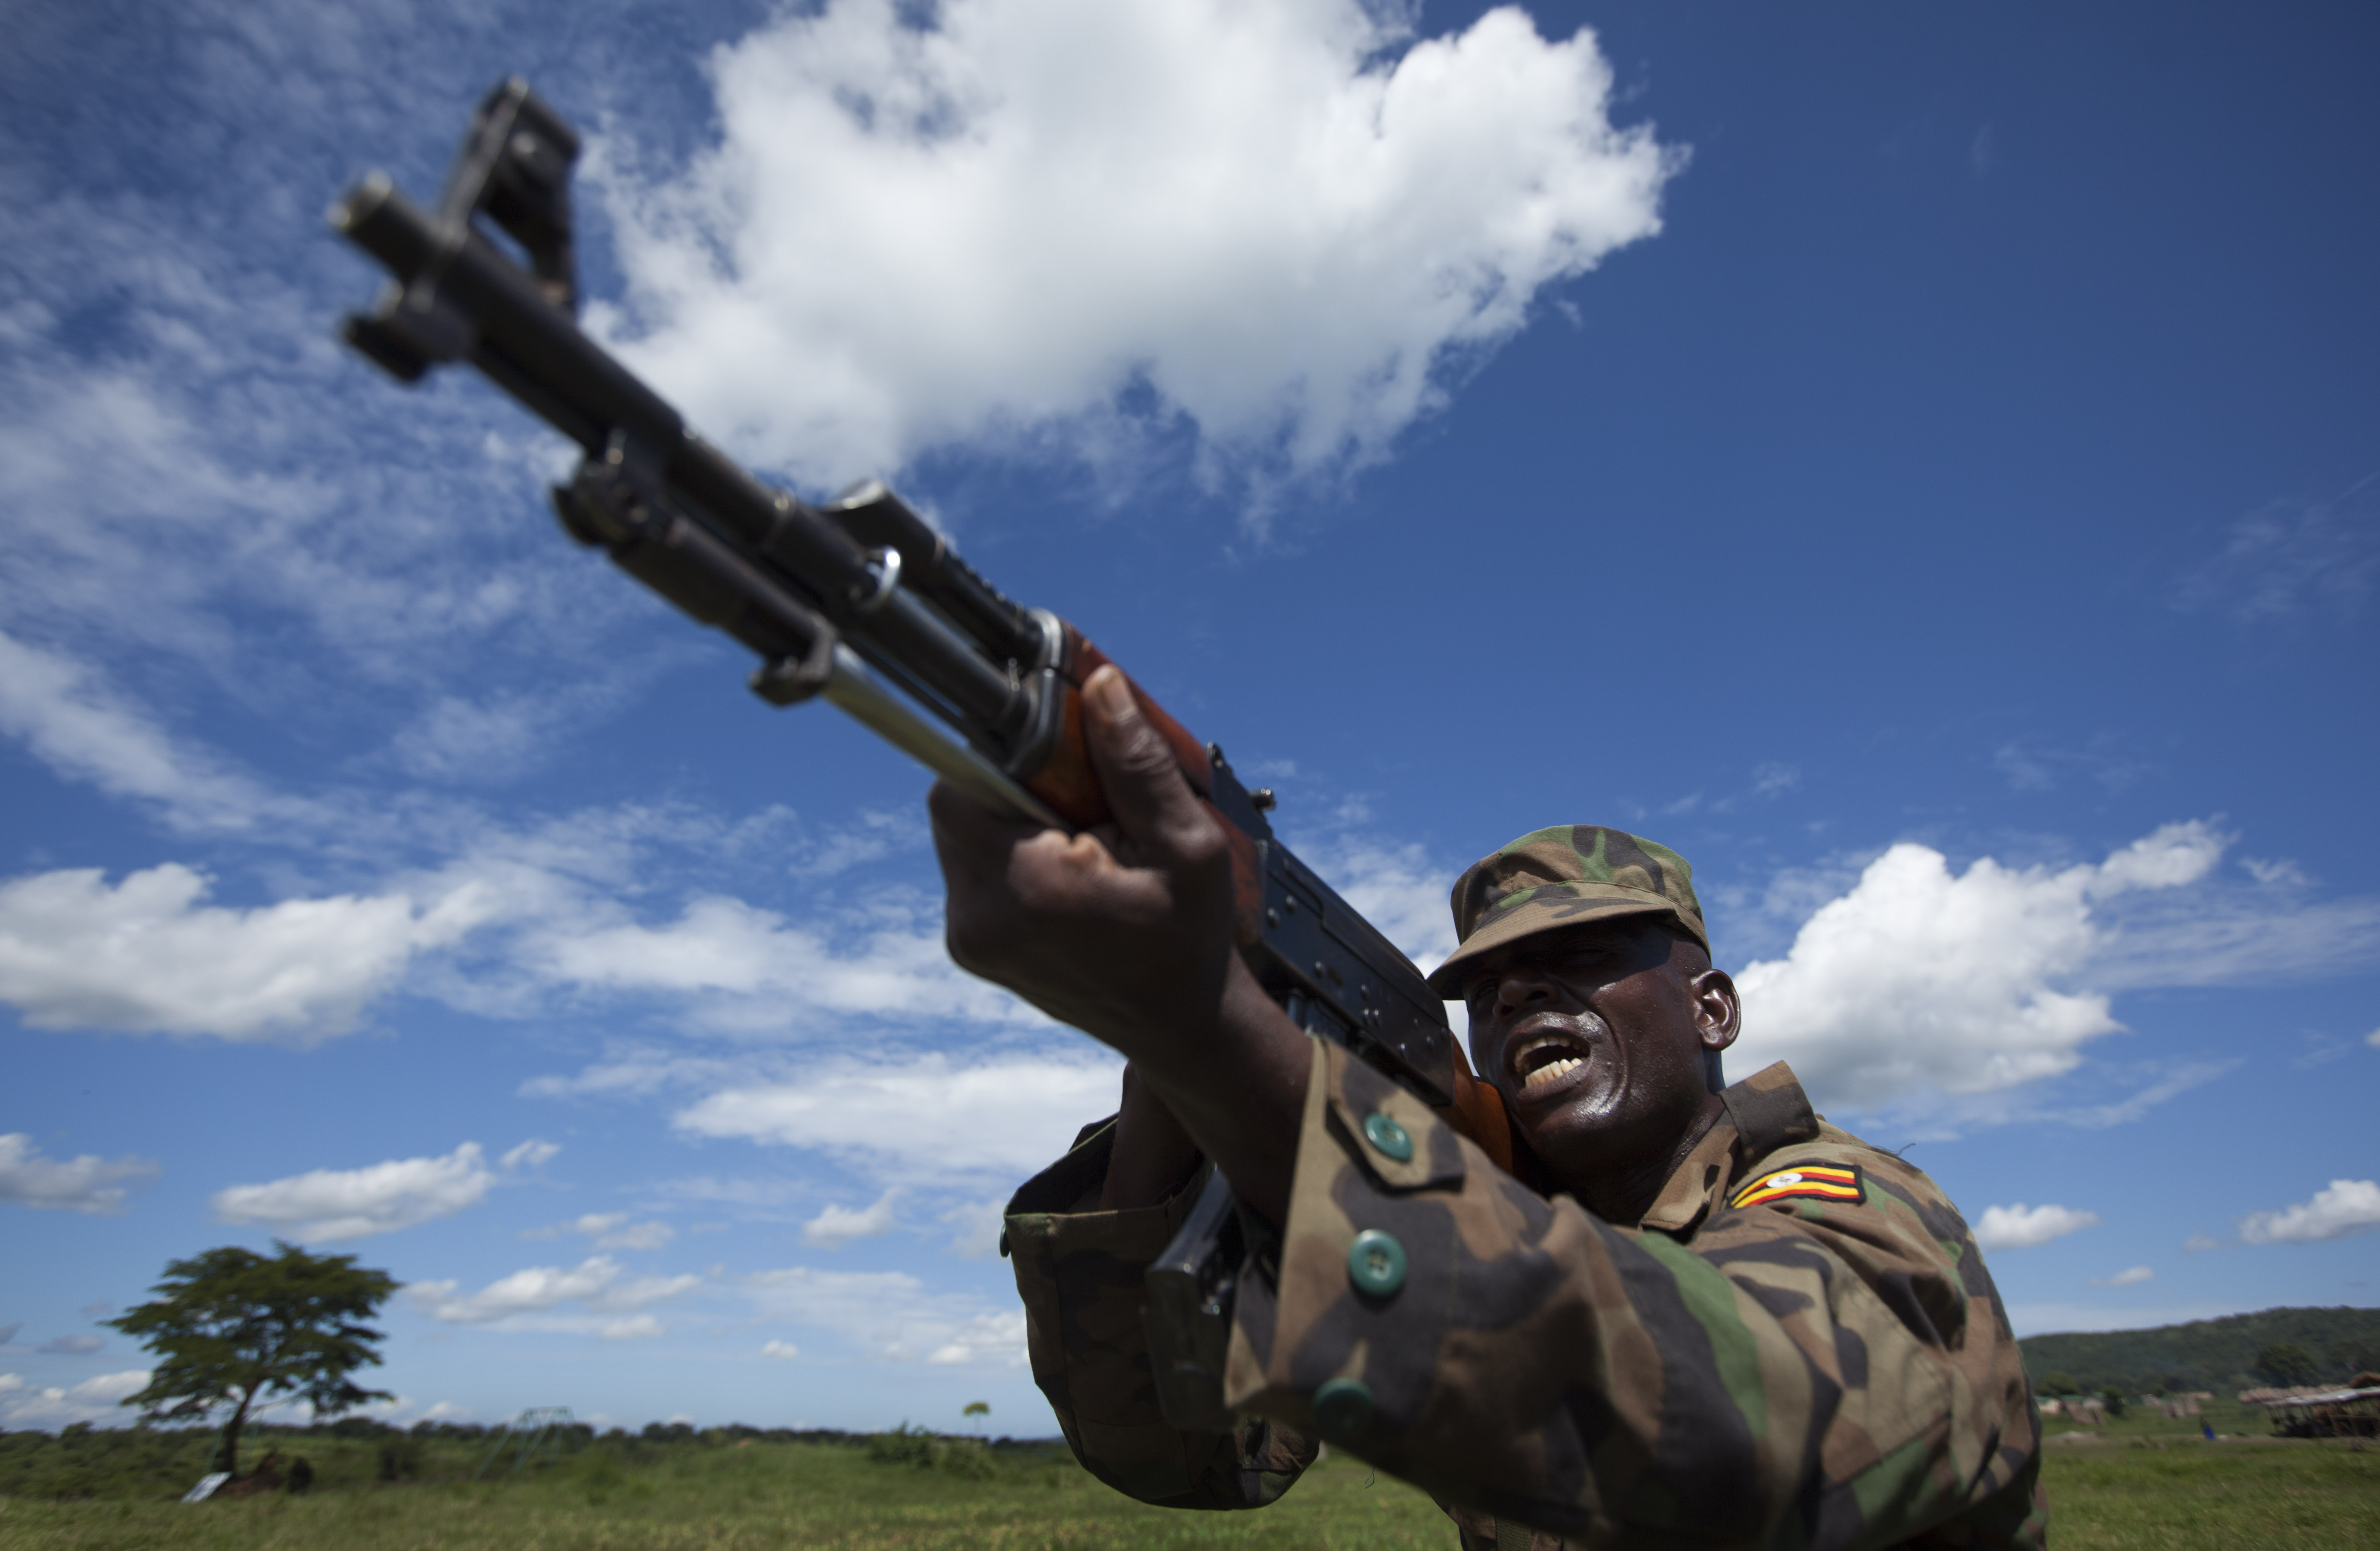 En soldat från Uganda People's defence force i vapenträning. Han ingår i den internationella styrka som slåss mot El Shabab i Somalia. 